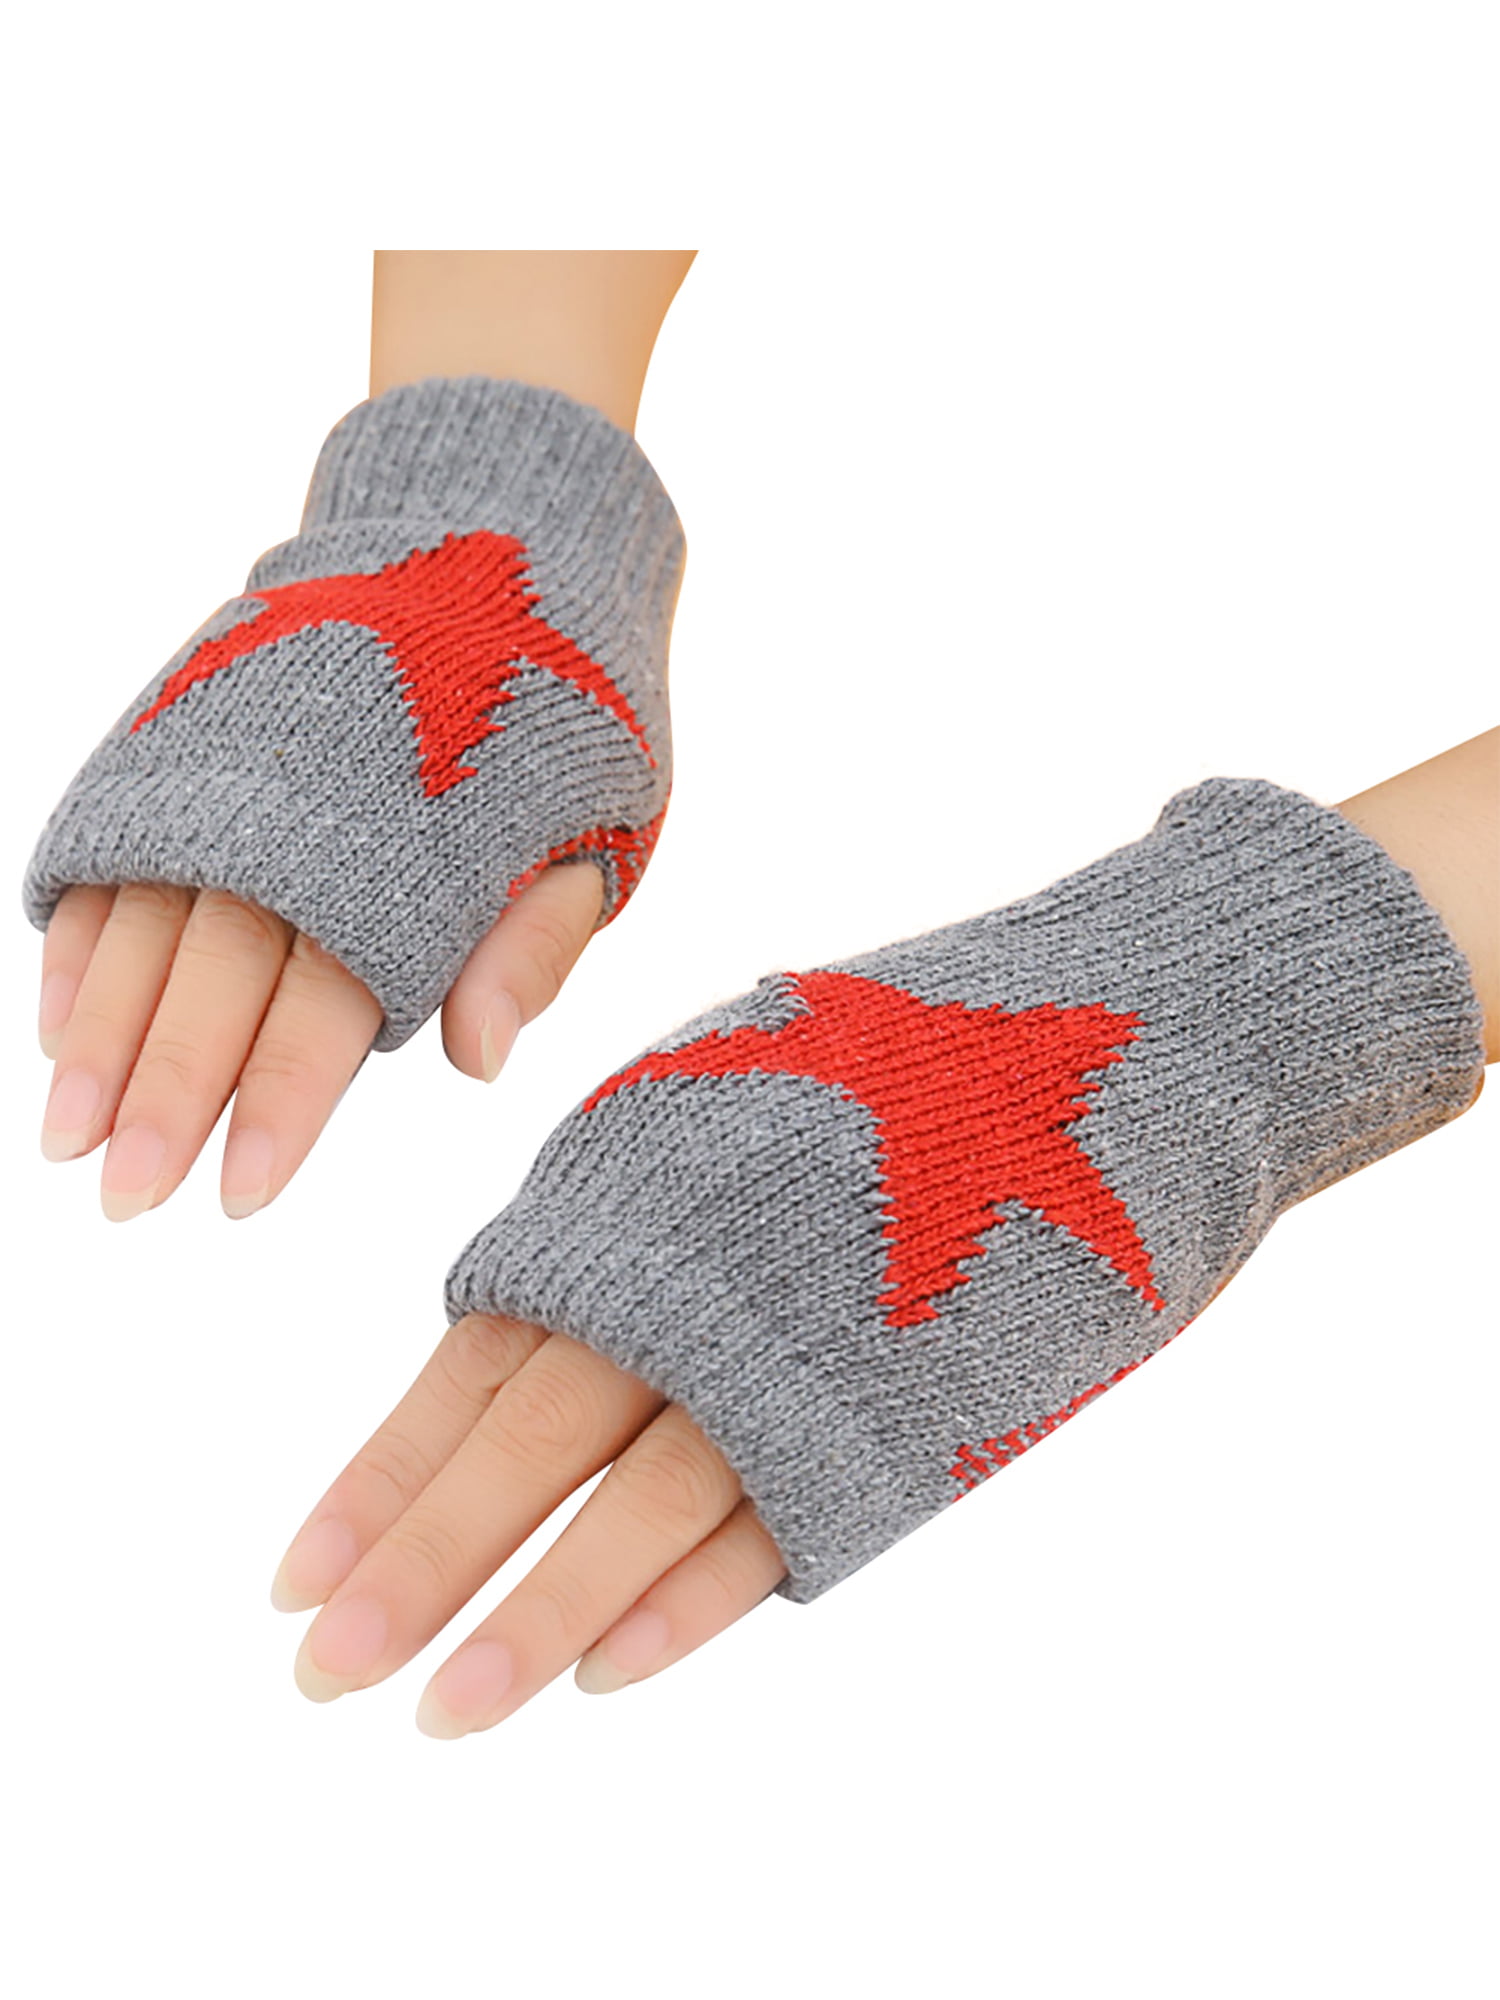 Fingerless Mitten Gloves Knitted Gloves Winter Warm Hand Wrist Warmer Gloves 